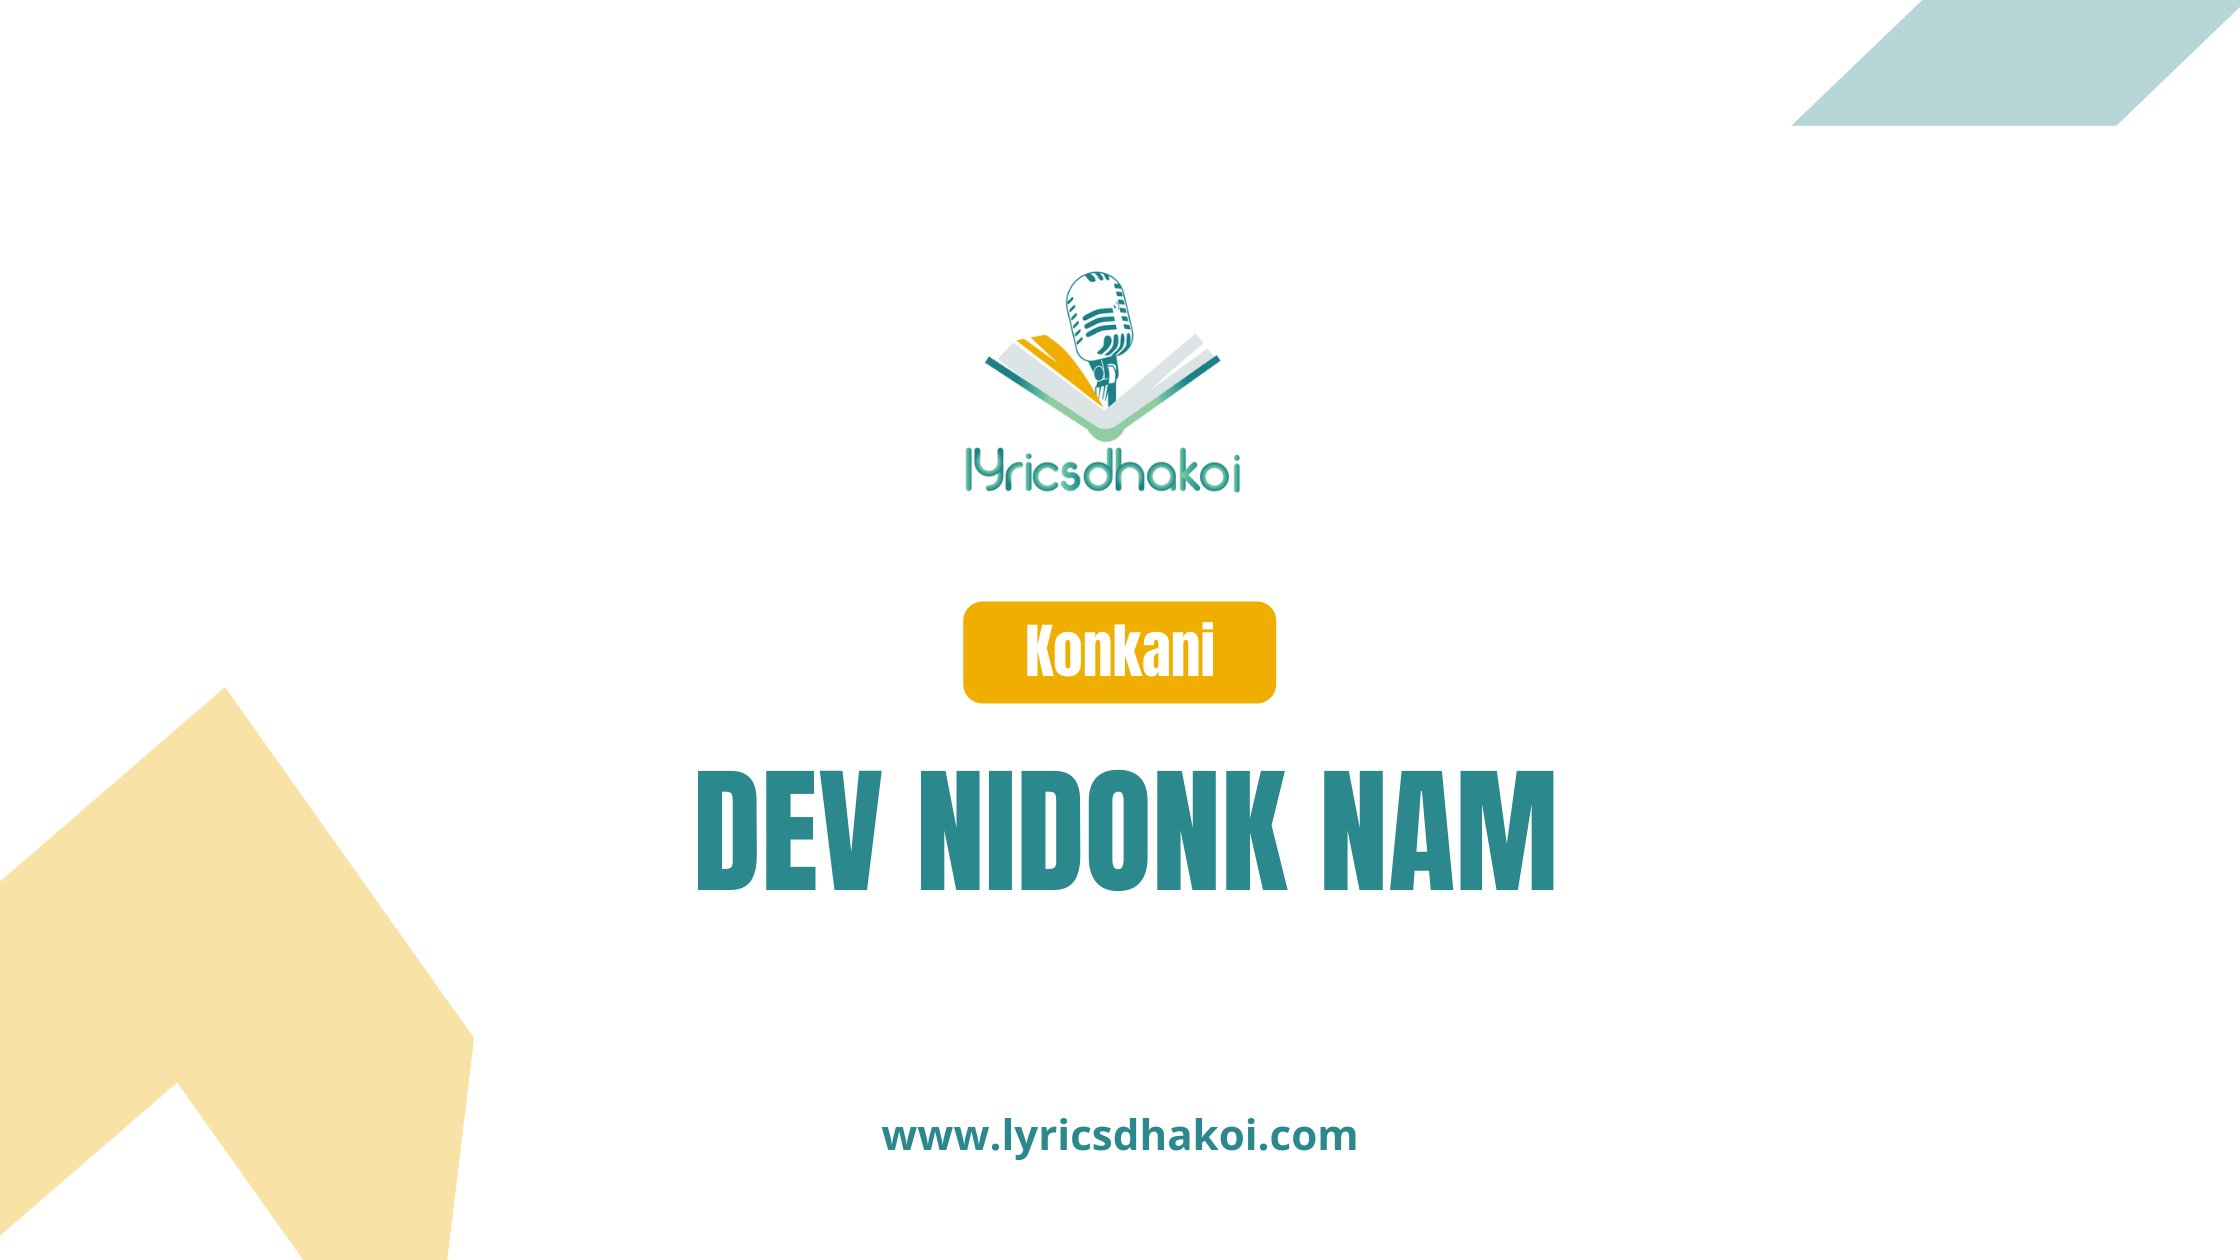 Dev Nidonk Nam Konkani Lyrics for Karaoke Online - LyricsDhakoi.com